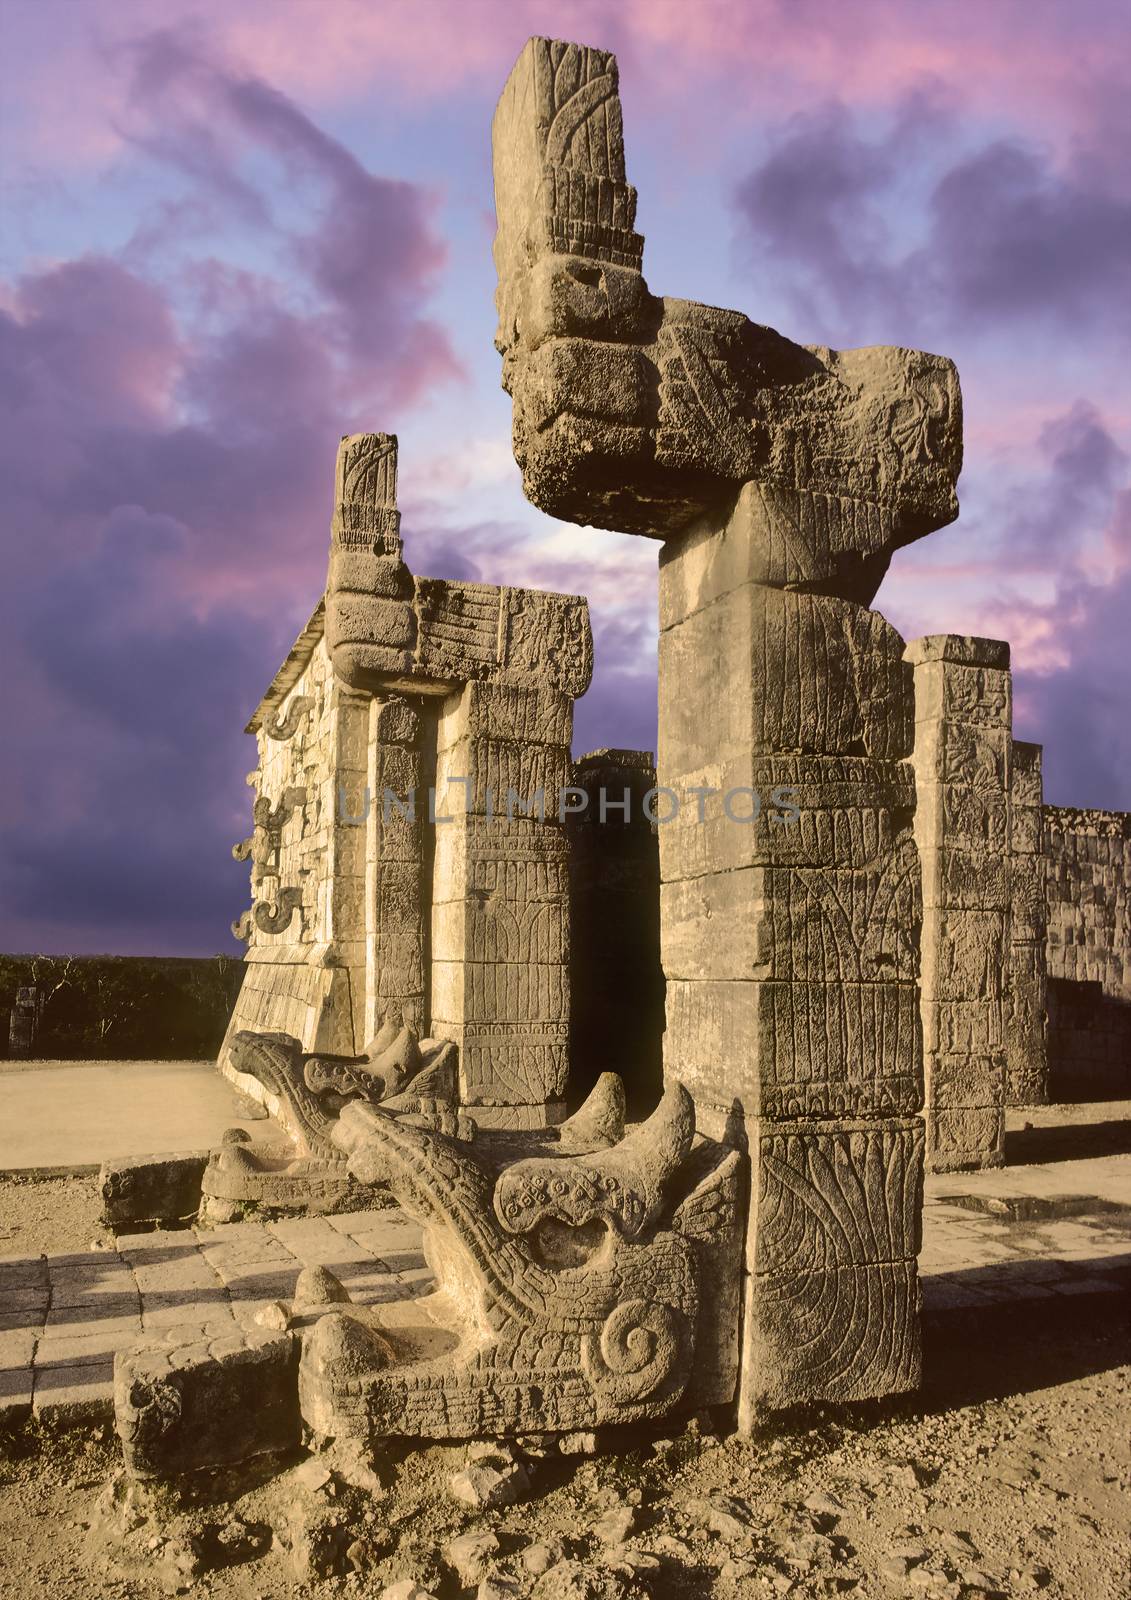 Mayan temple pyramid sculpture in the city of Chichen Itza, Yucatan, Mexico